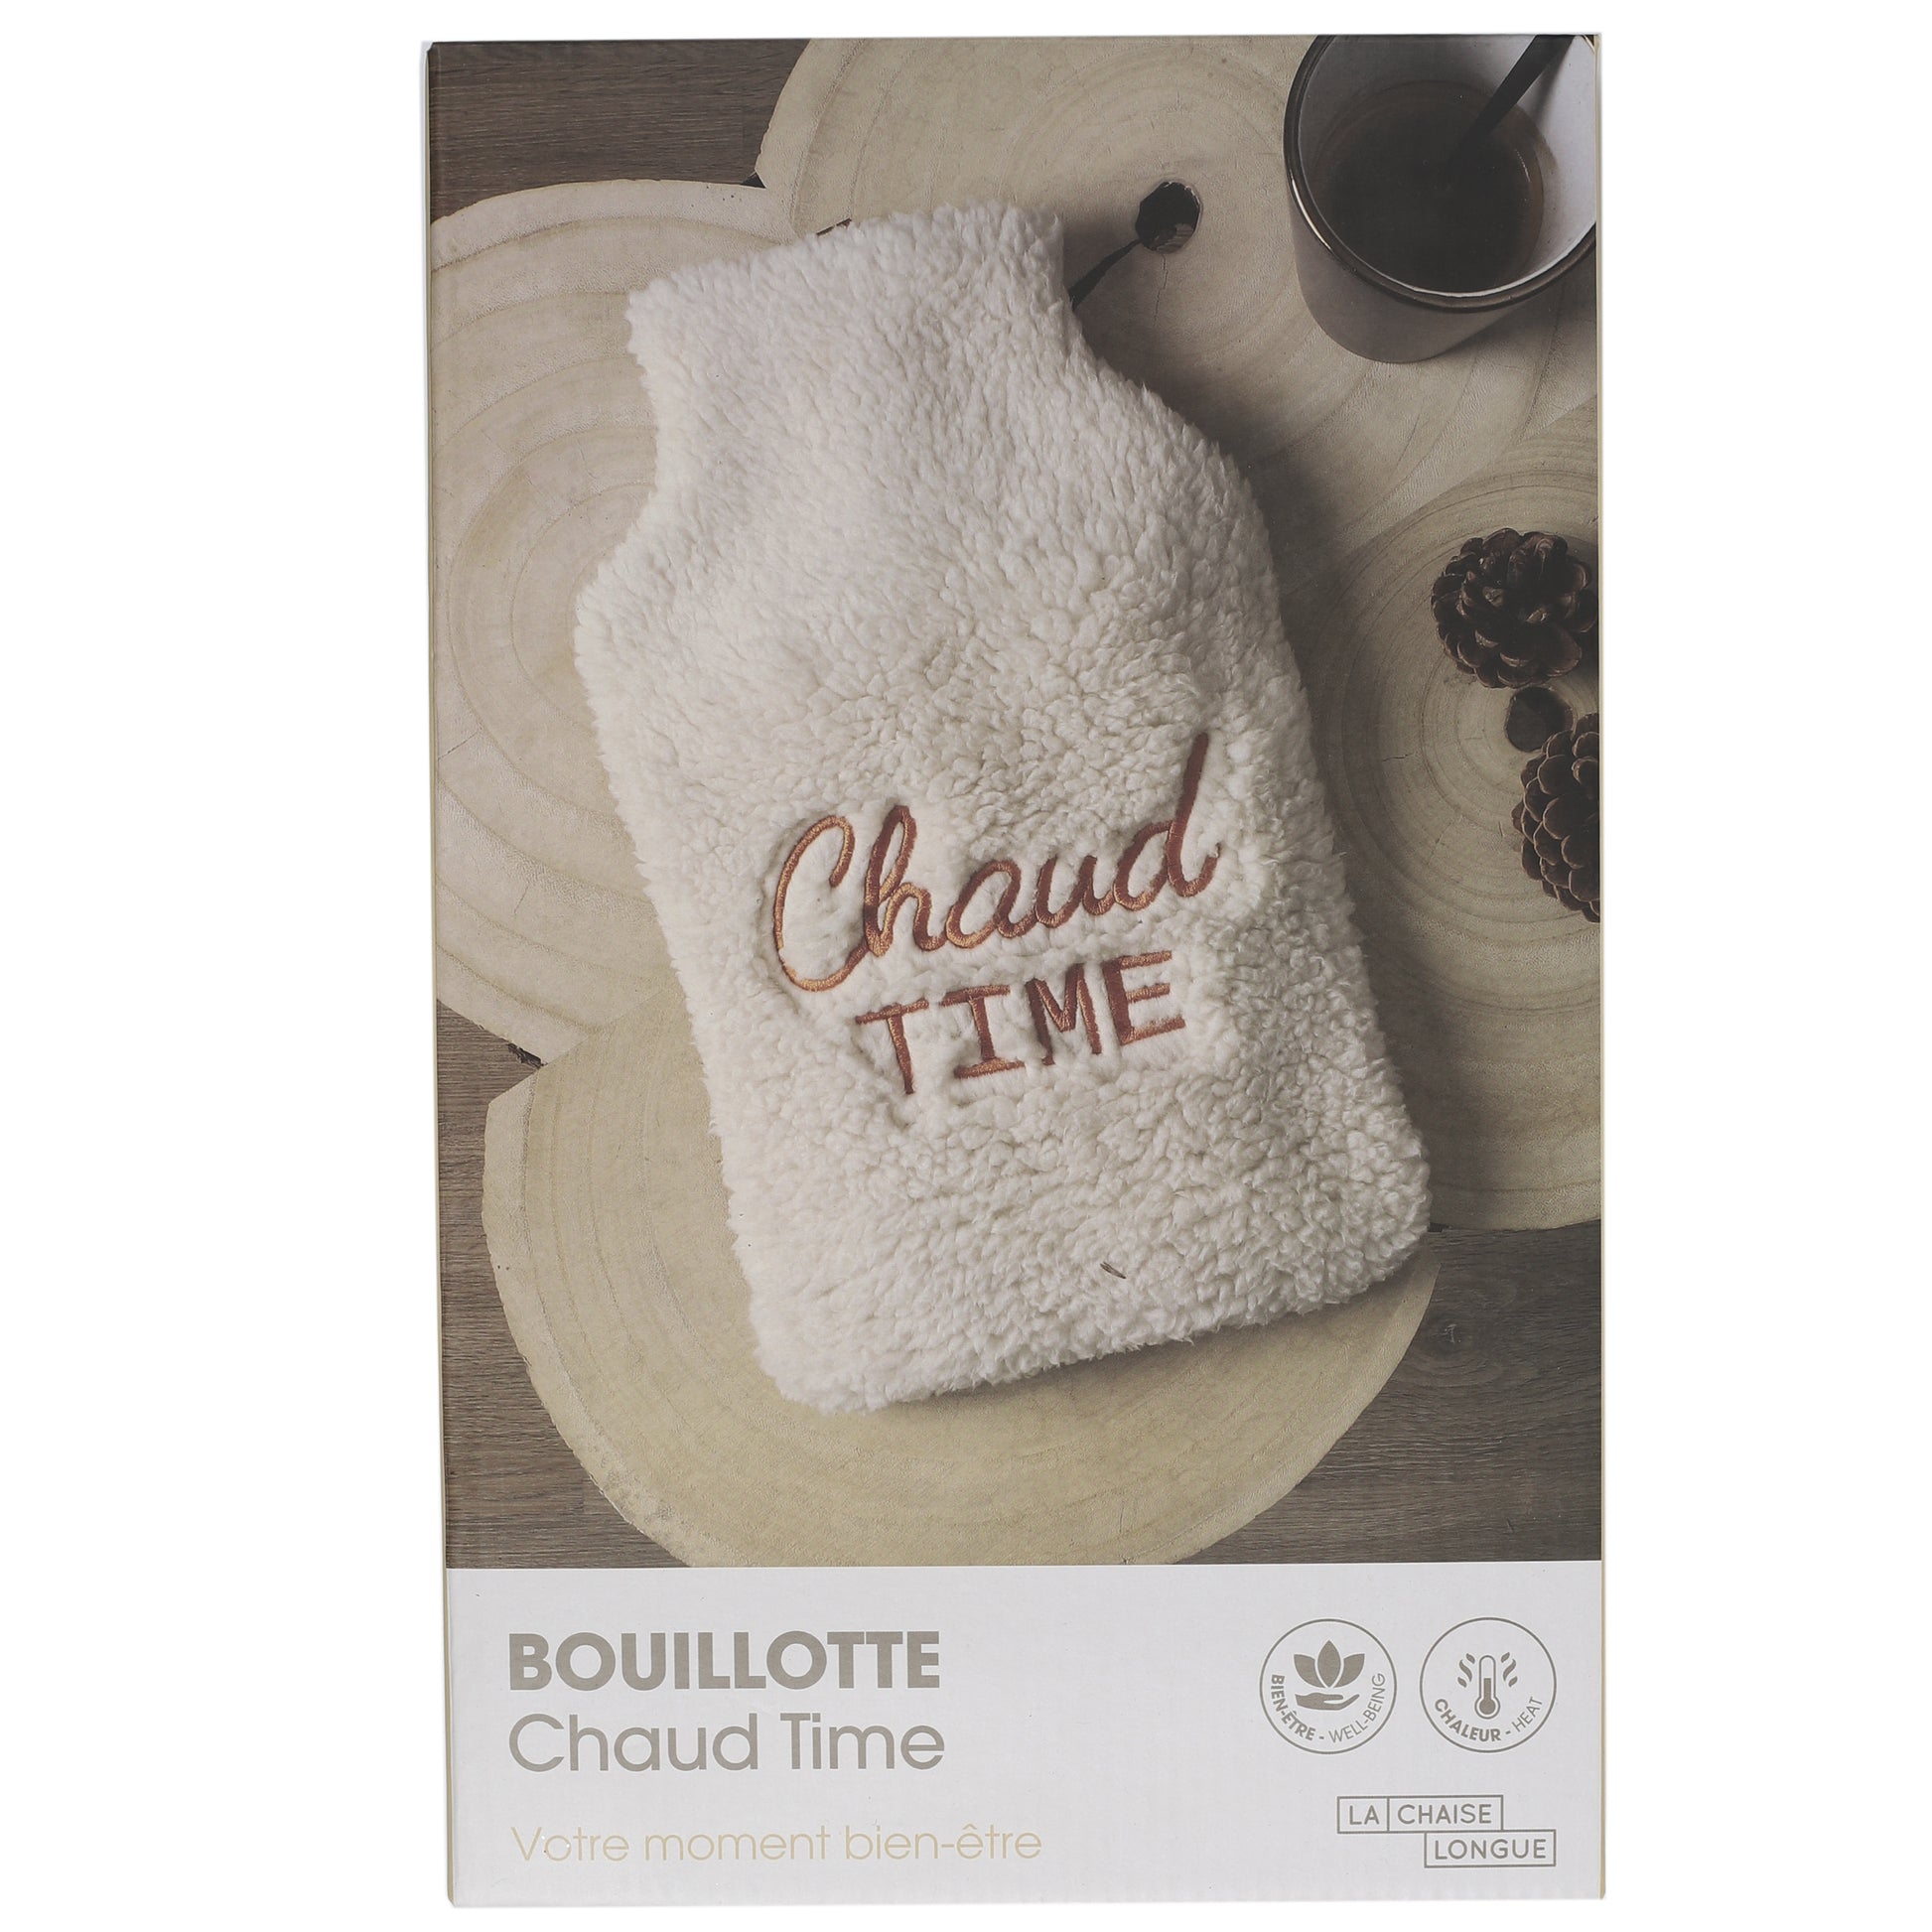 BOUILLOTTE CHAUD TIME - La Chaise Longue